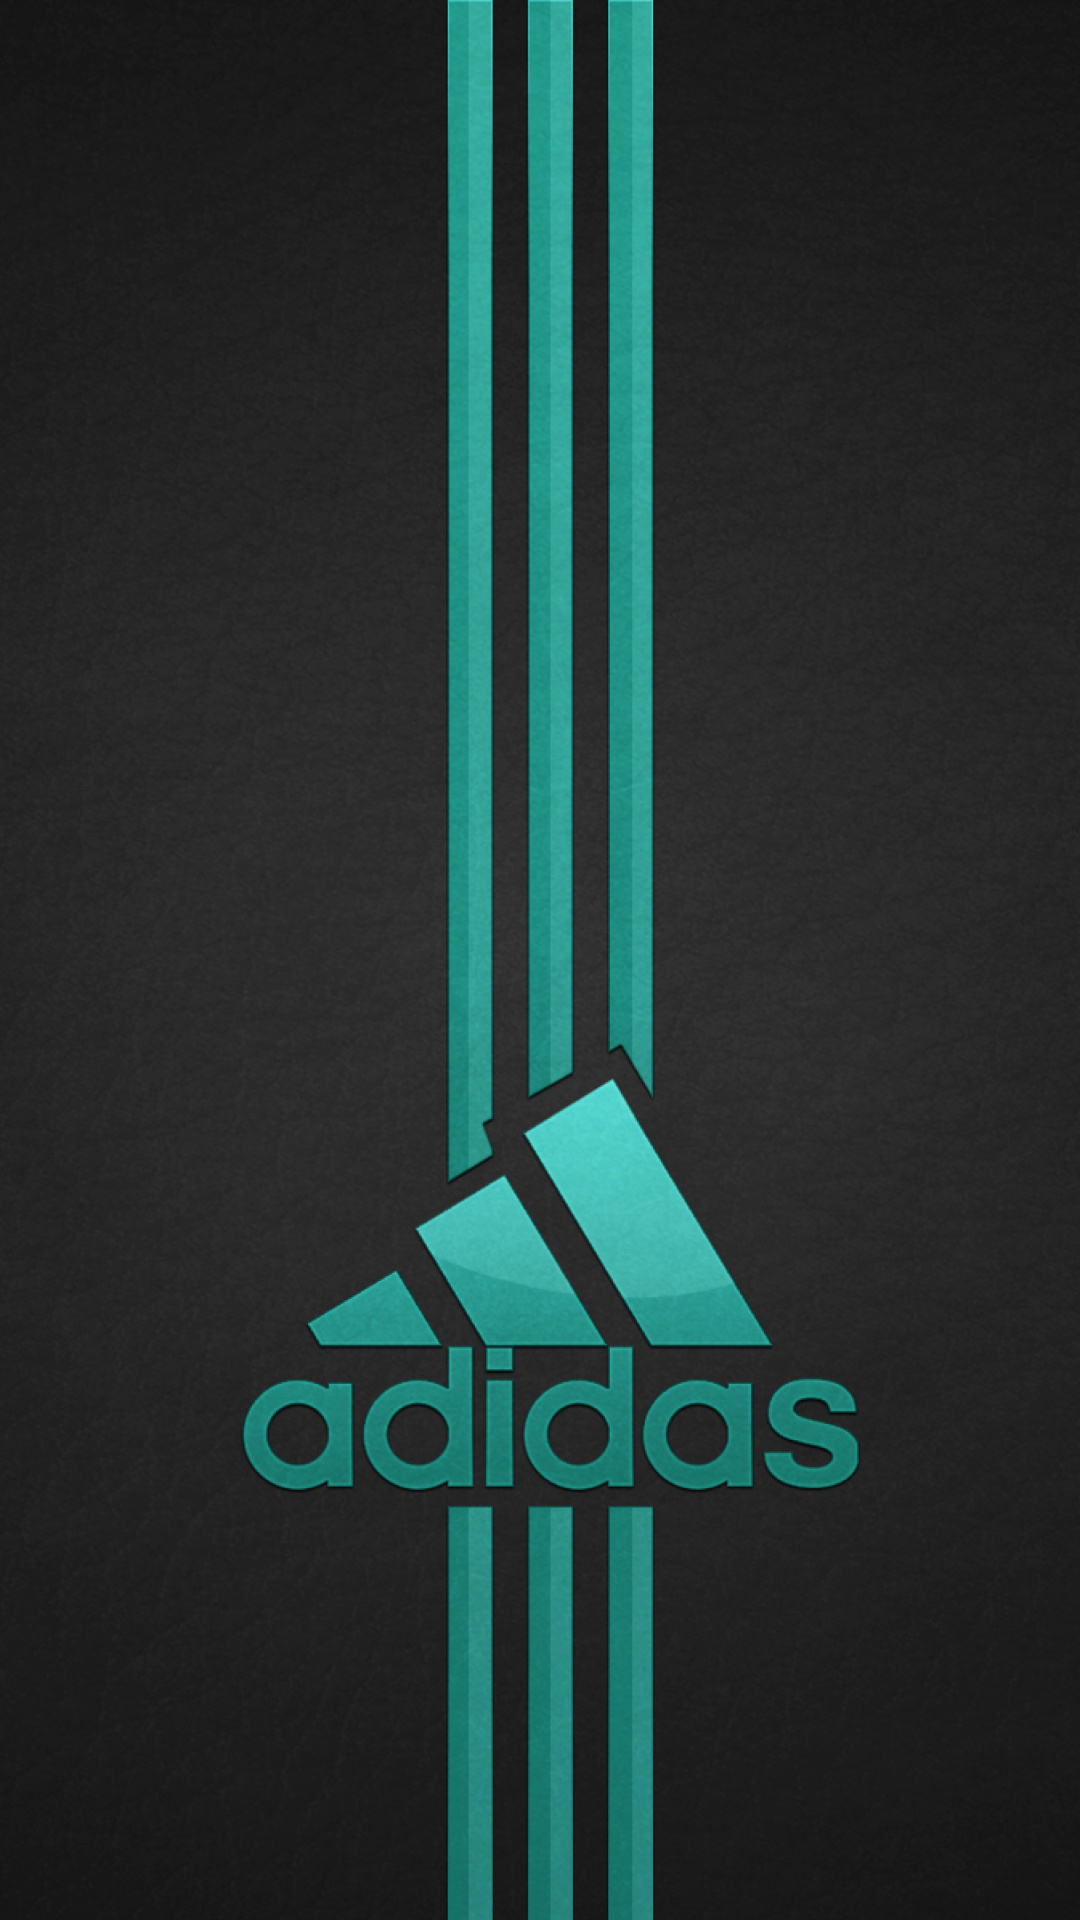 Download 500 Adidas logo background black Chất lượng cao miễn phí